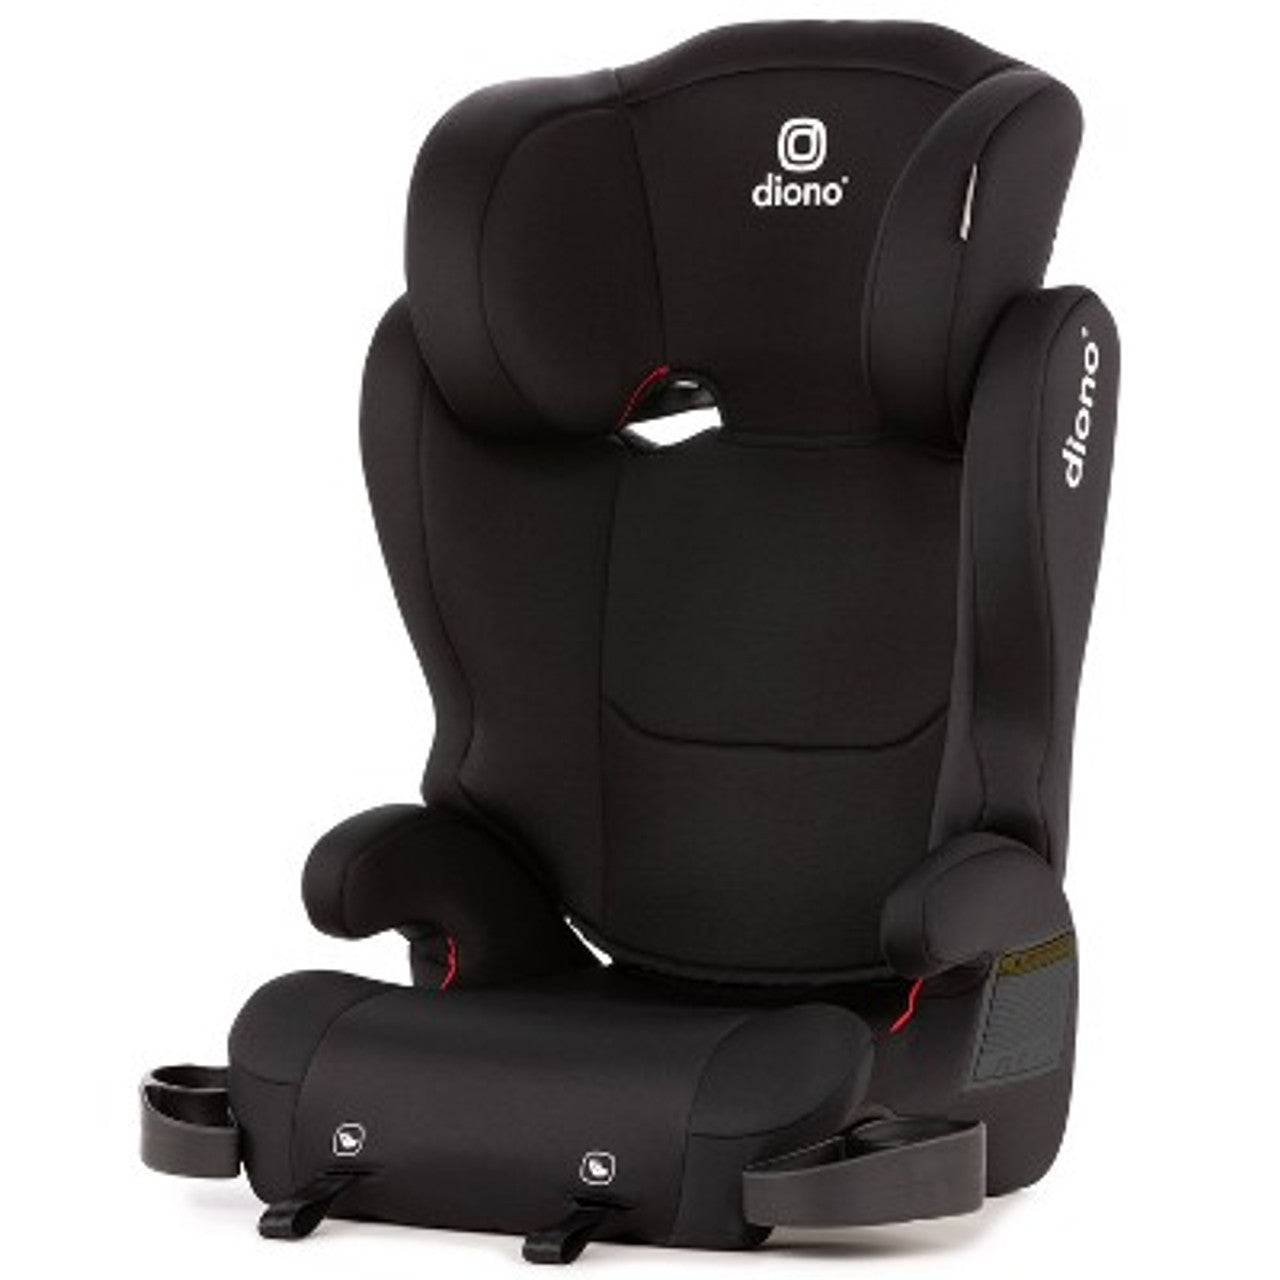 New - Diono Cambria 2 Booster Car Seat - Black